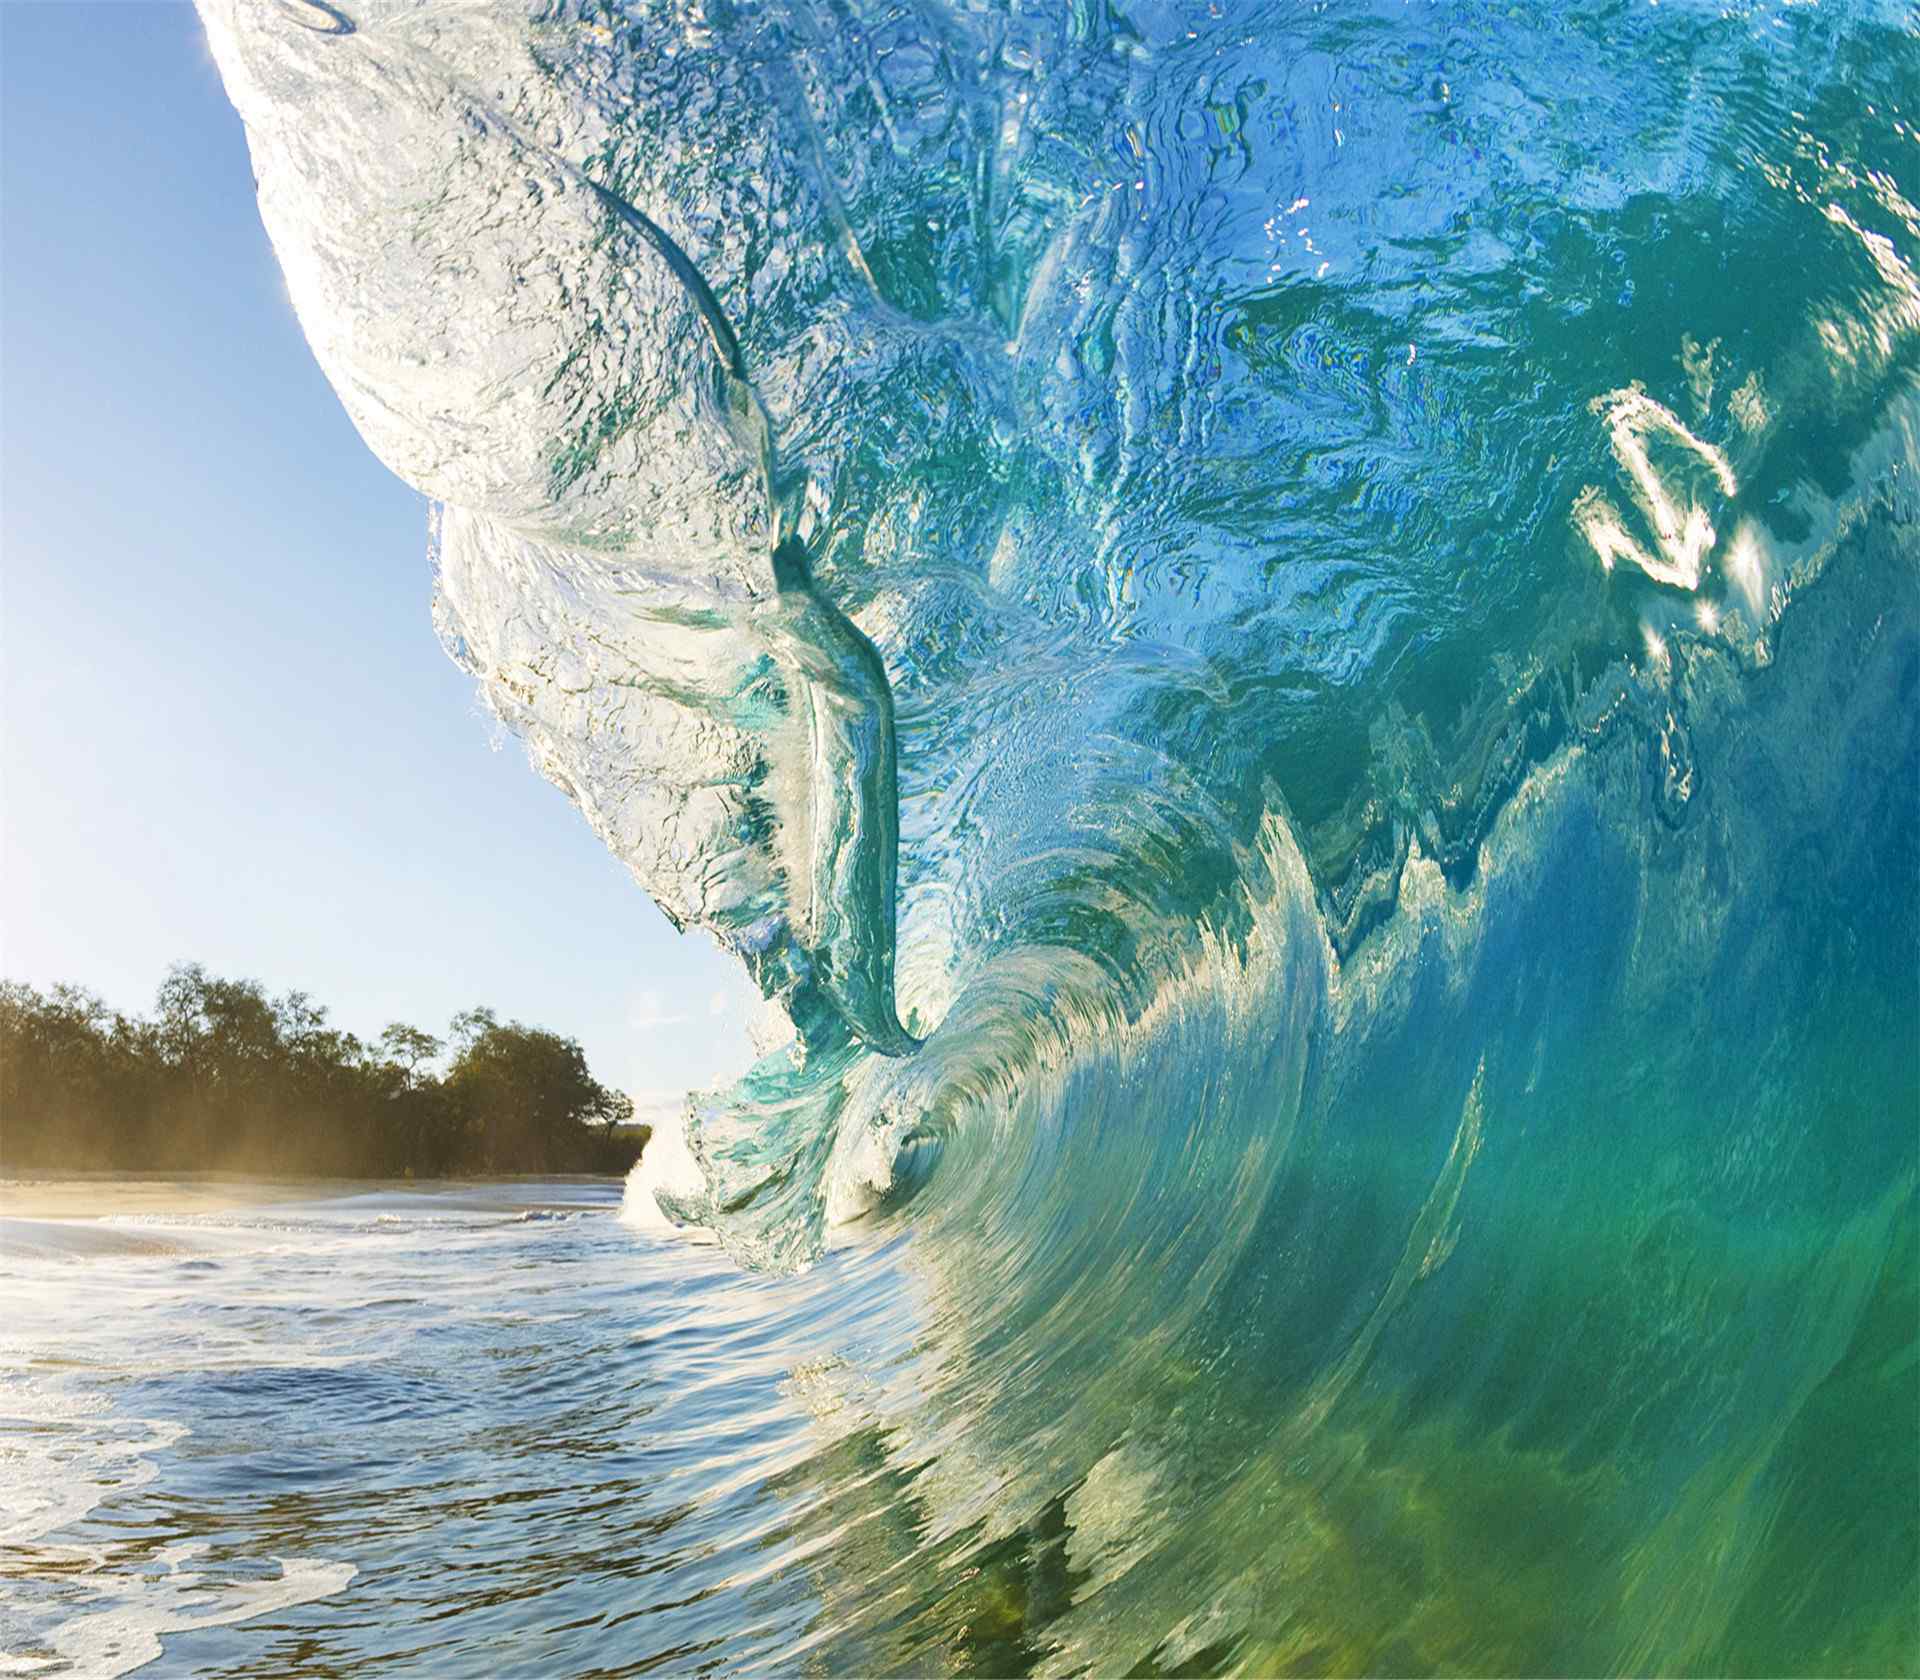 夏威夷海浪浪花冲击风景高清图片桌面壁纸